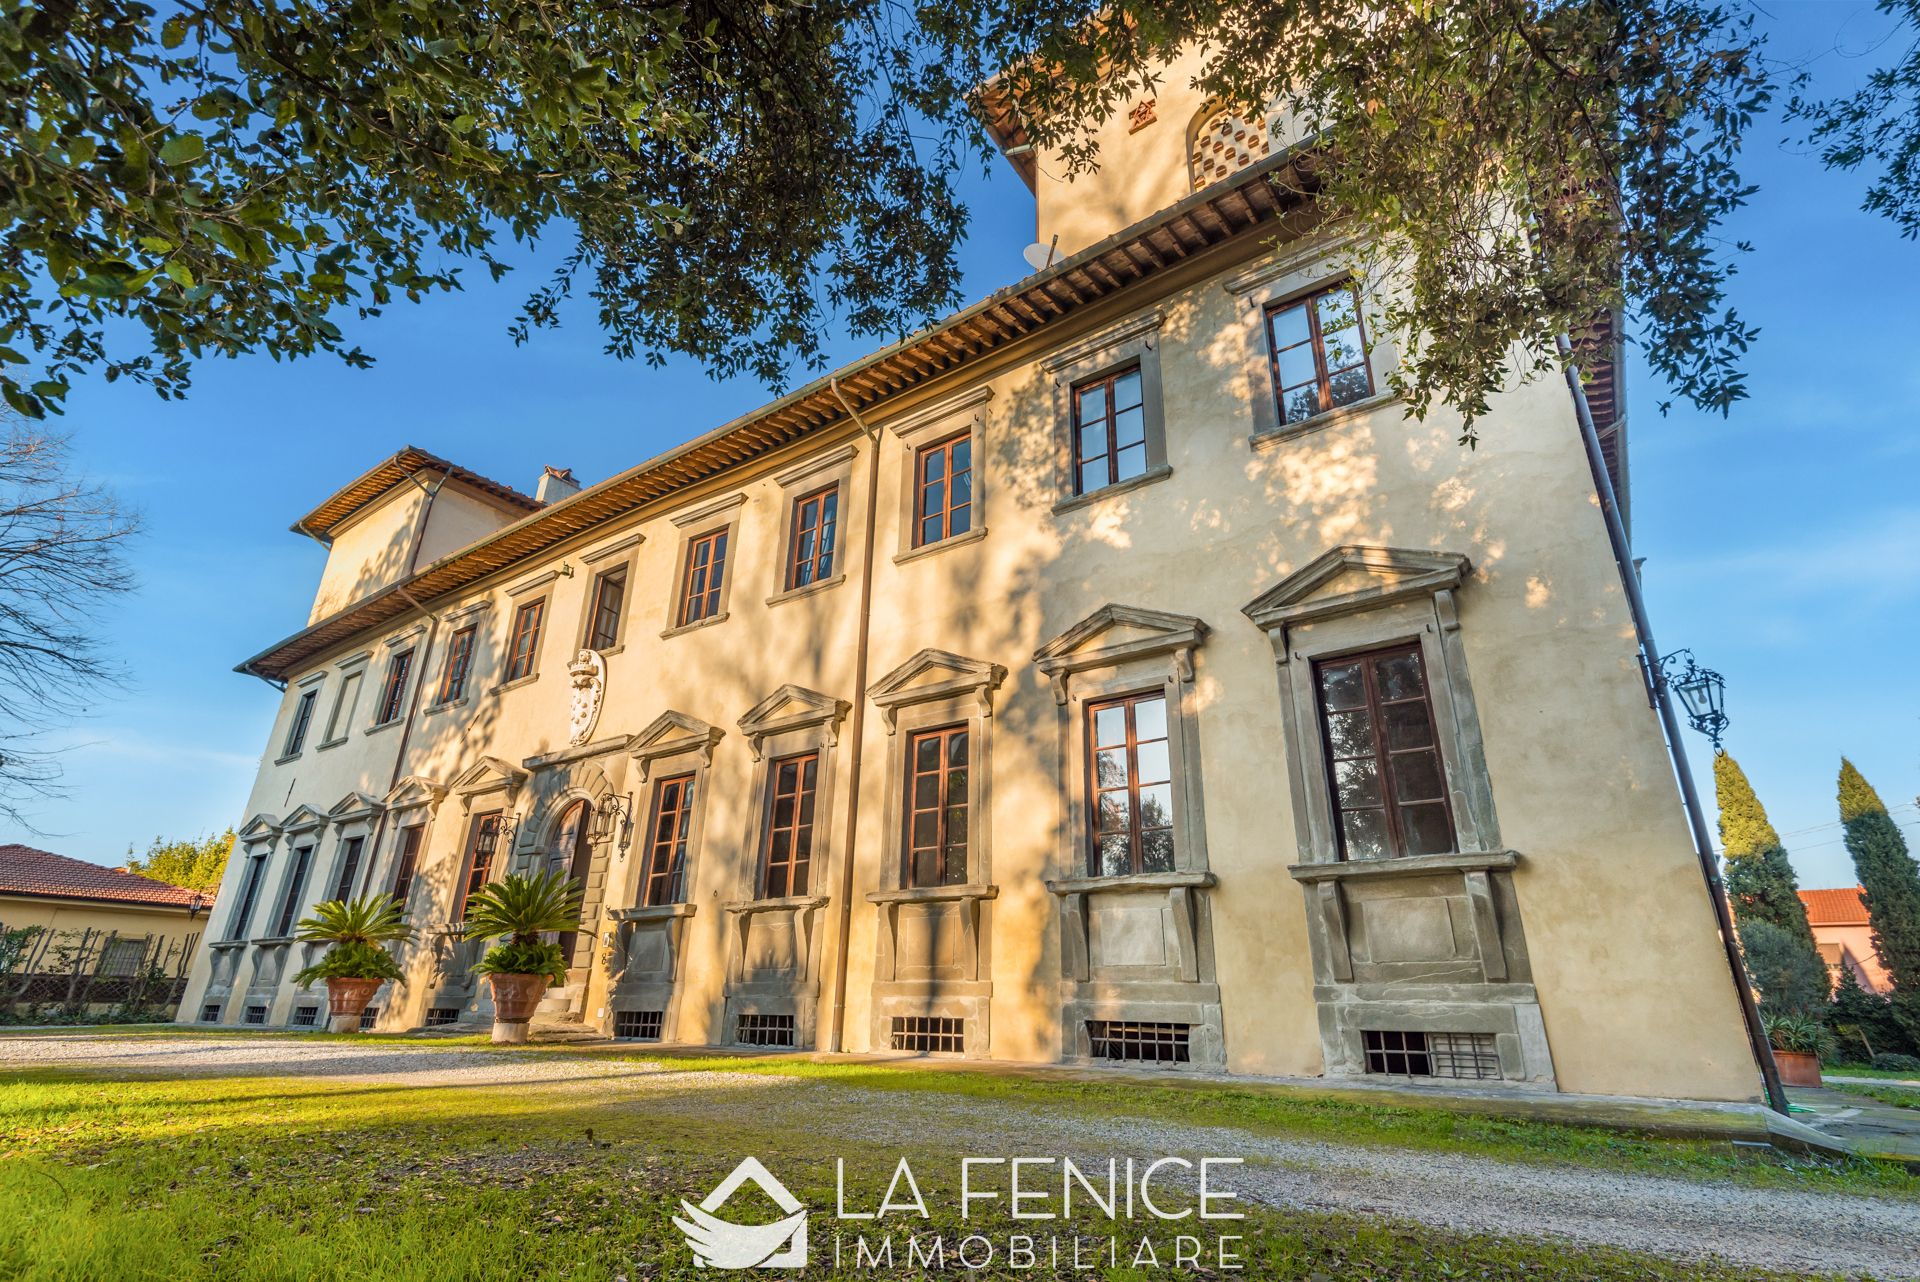 For sale villa in quiet zone Pisa Toscana